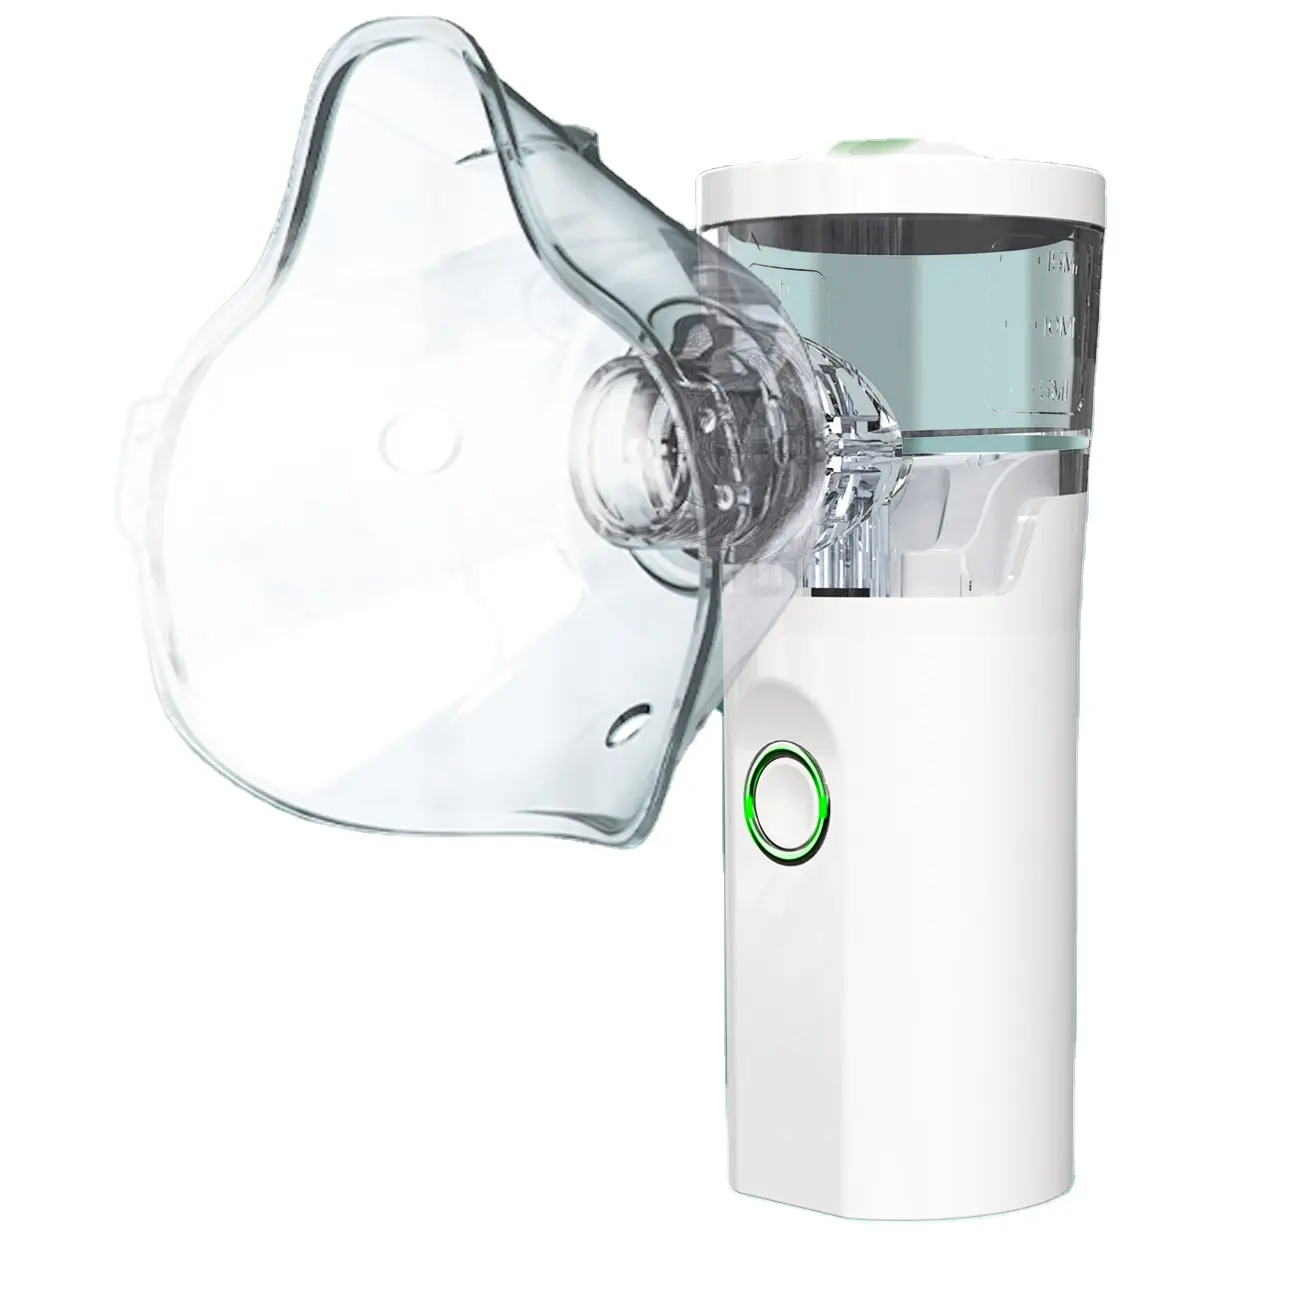 Hete Verkoop Goedkope Ultrasone Medische Apparatuur Home Compressor Inhalator Masker Draagbare Mesh Handheld Baby Pocket Vernevelaar Machine